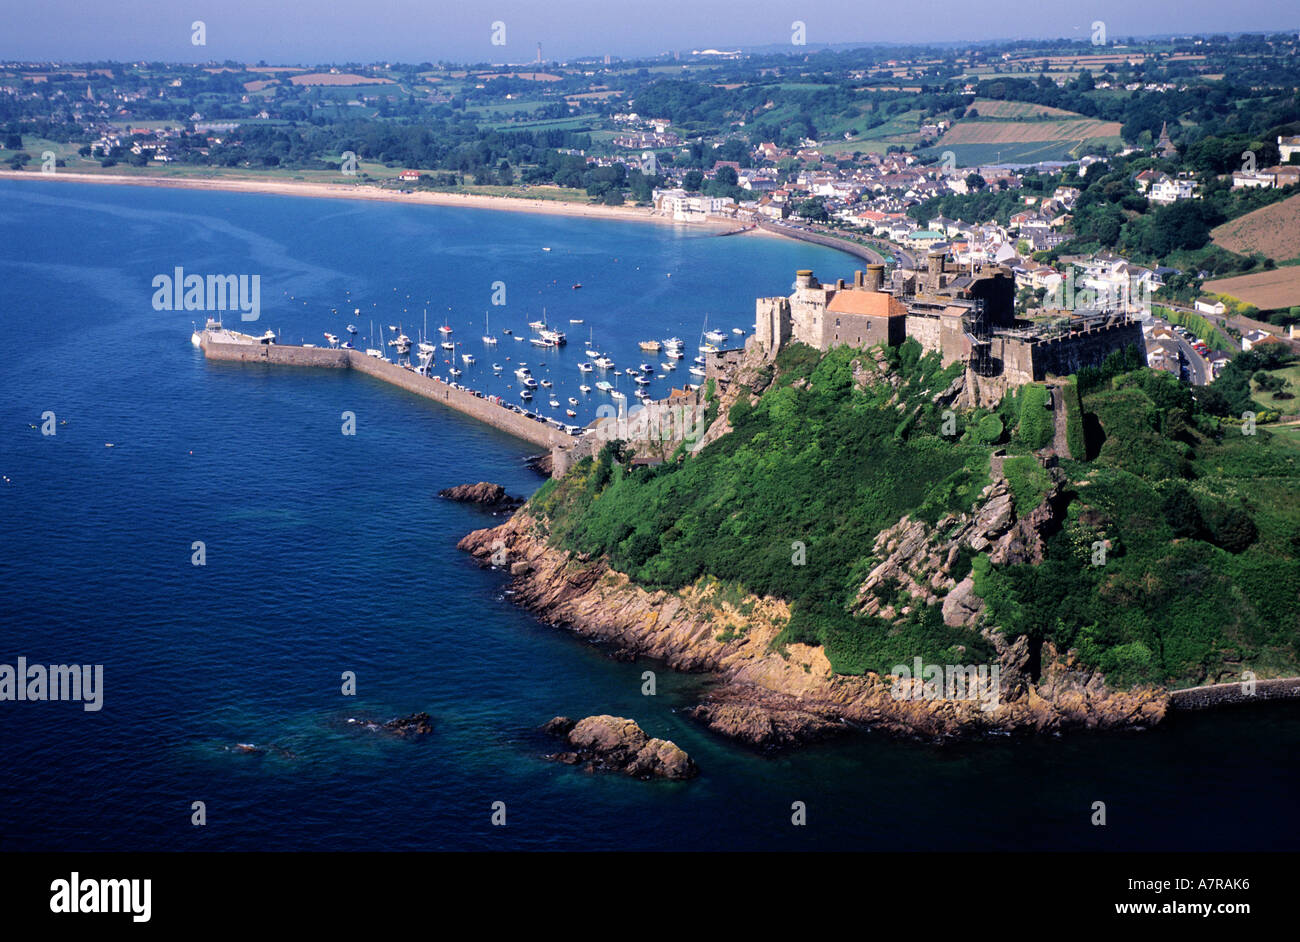 Je zal beter worden geleidelijk zaterdag Jersey channel islands aerial view hi-res stock photography and images -  Alamy